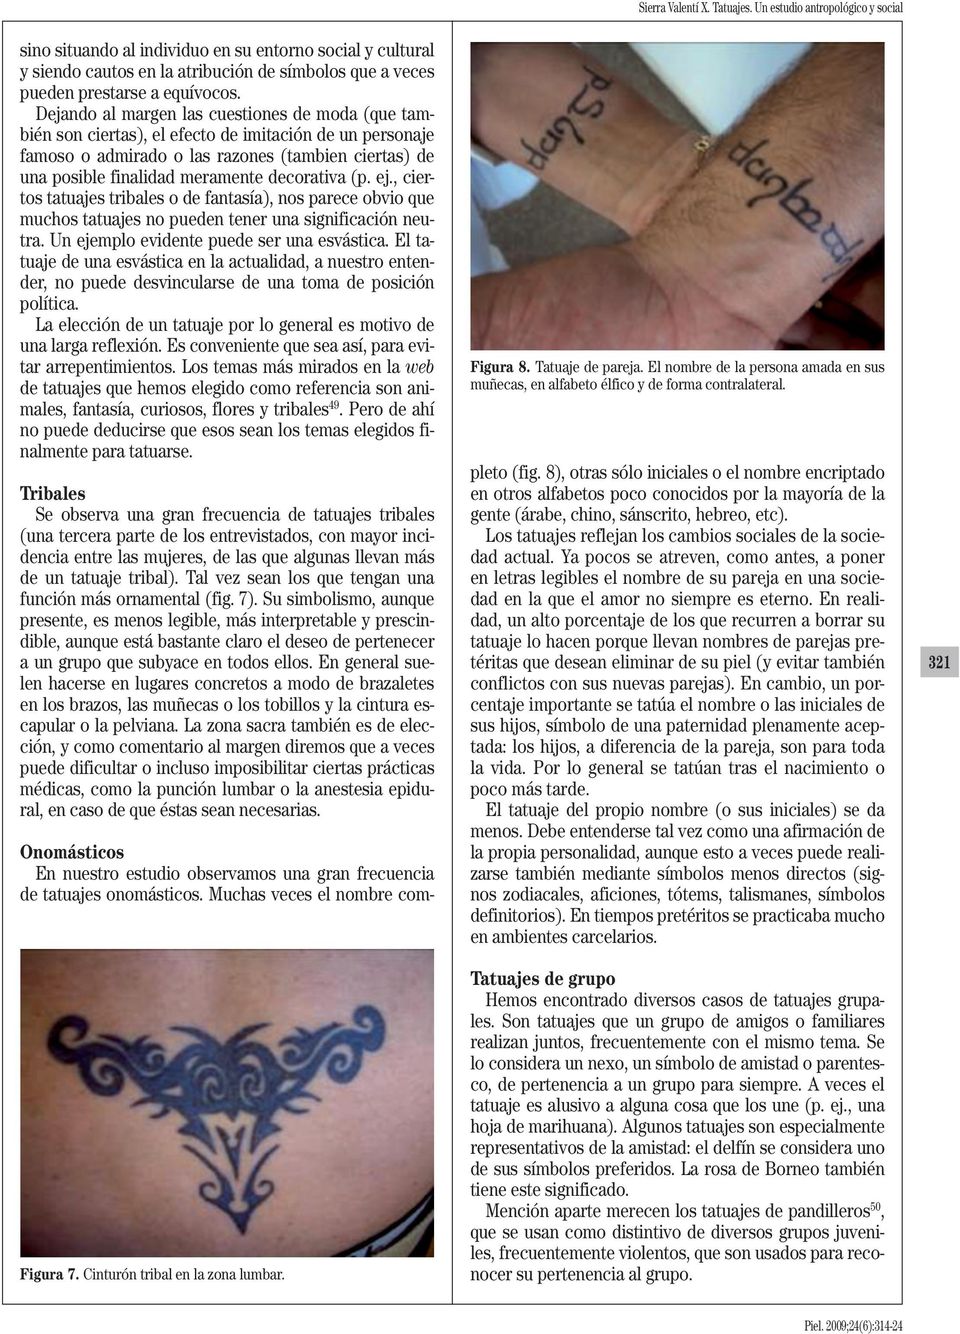 decorativa (p. ej., ciertos tatuajes tribales o de fantasía), nos parece obvio que muchos tatuajes no pueden tener una significación neutra. Un ejemplo evidente puede ser una esvástica.